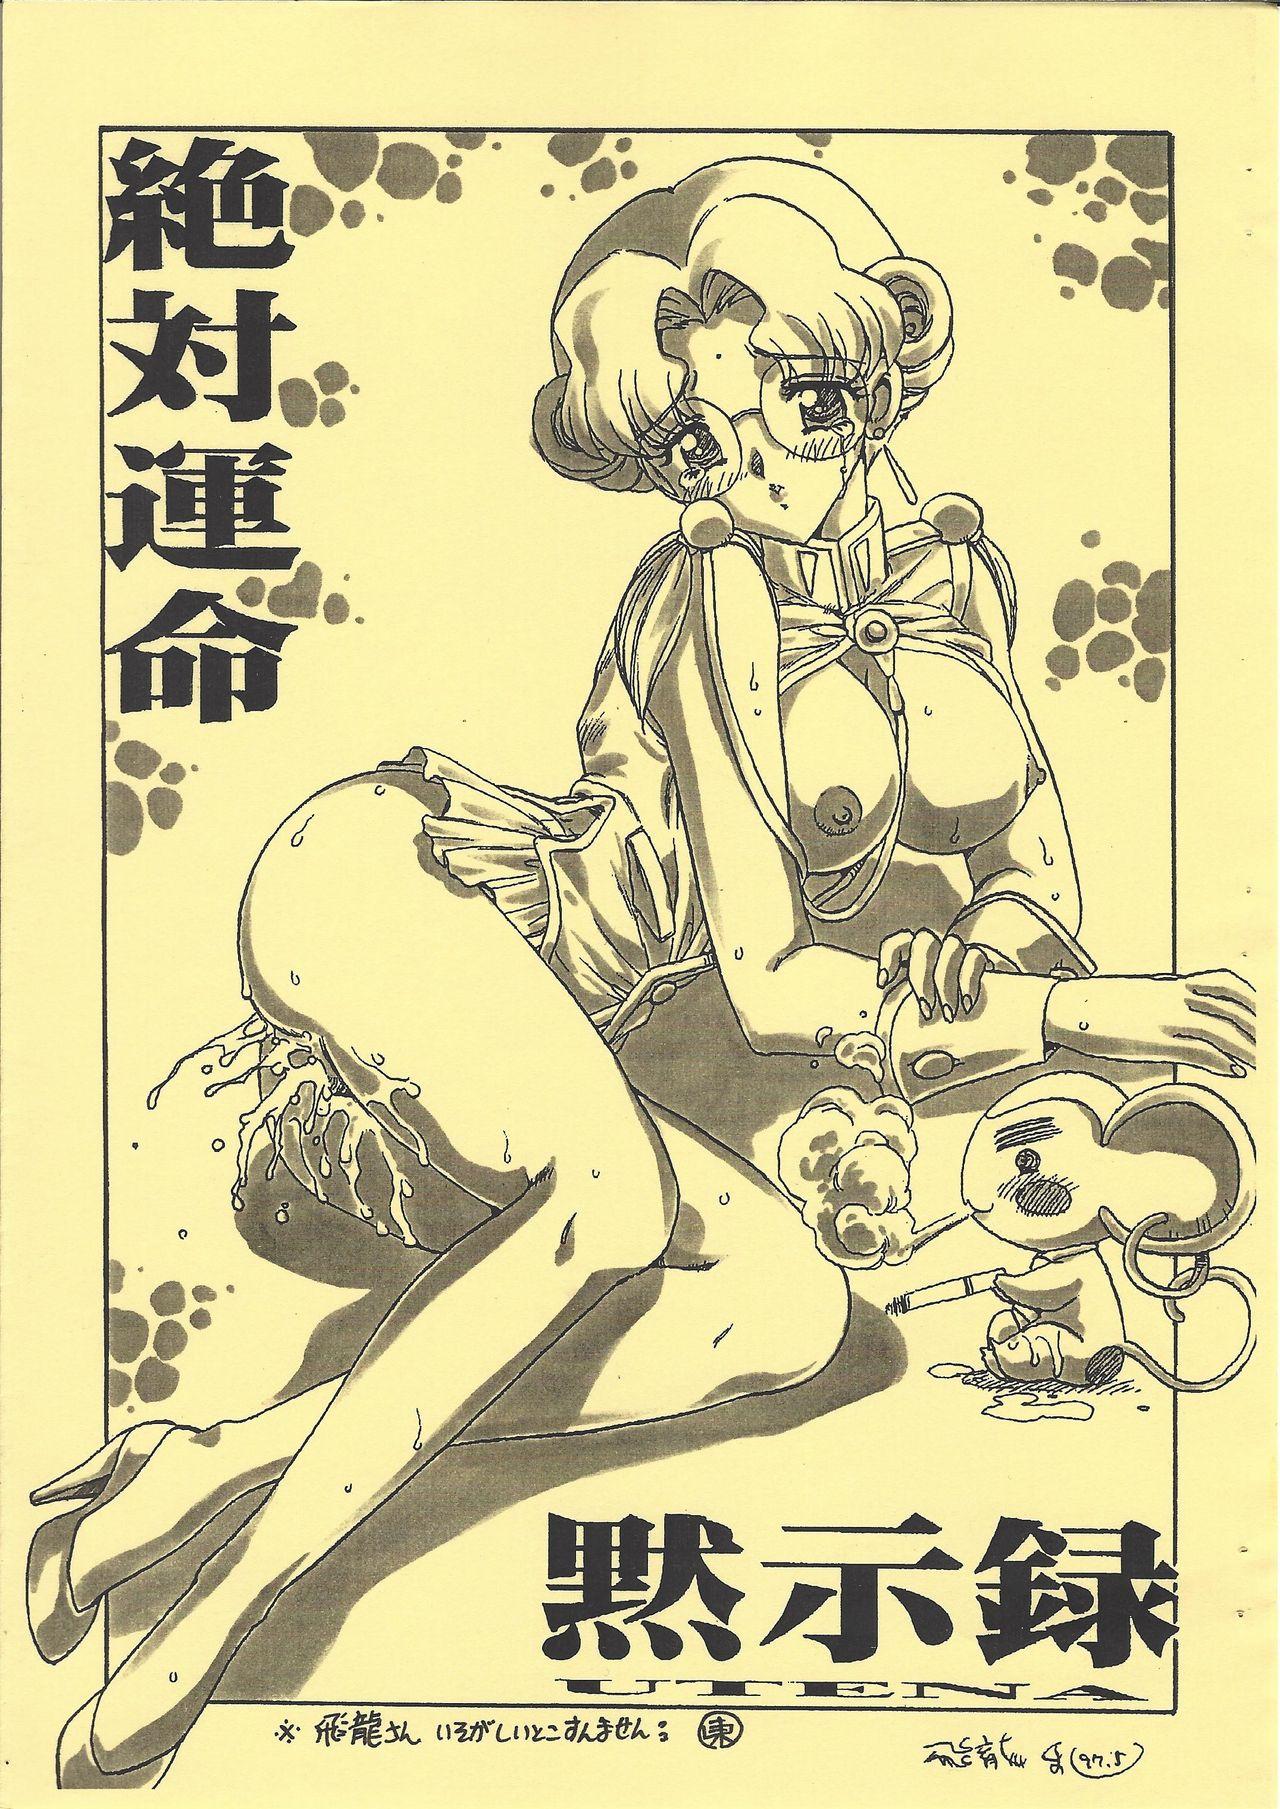 Linda Shinpi no Sekai Taisen - El hazard Sakura taisen | sakura wars Revolutionary girl utena | shoujo kakumei utena Australian - Page 3